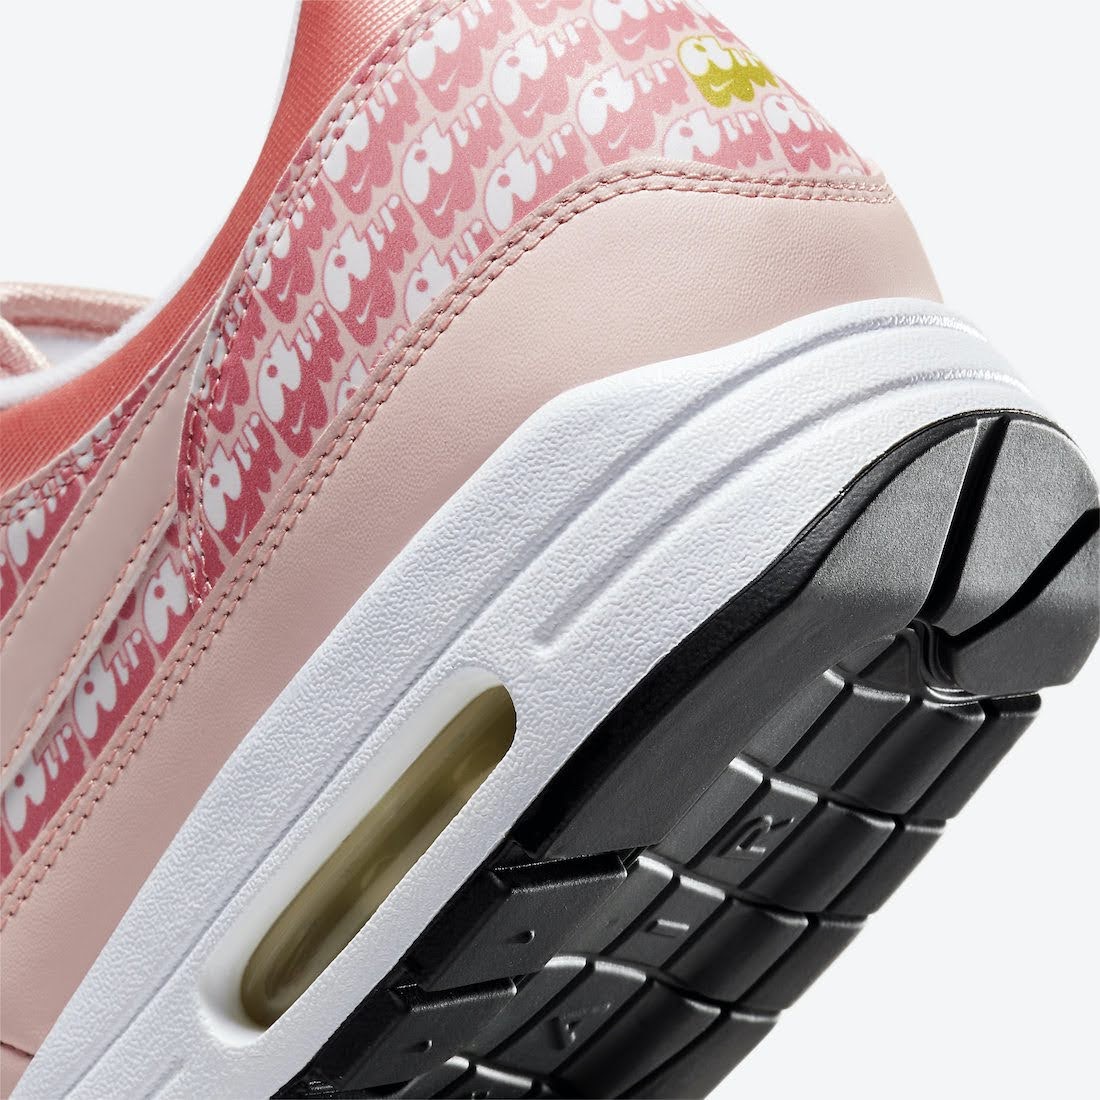 ナイキ エア マックス 1 ”ストロベリーレモネード” Nike-Air-Max-1-Strawberry-Lemonade-CJ0609-600-heel-closeup